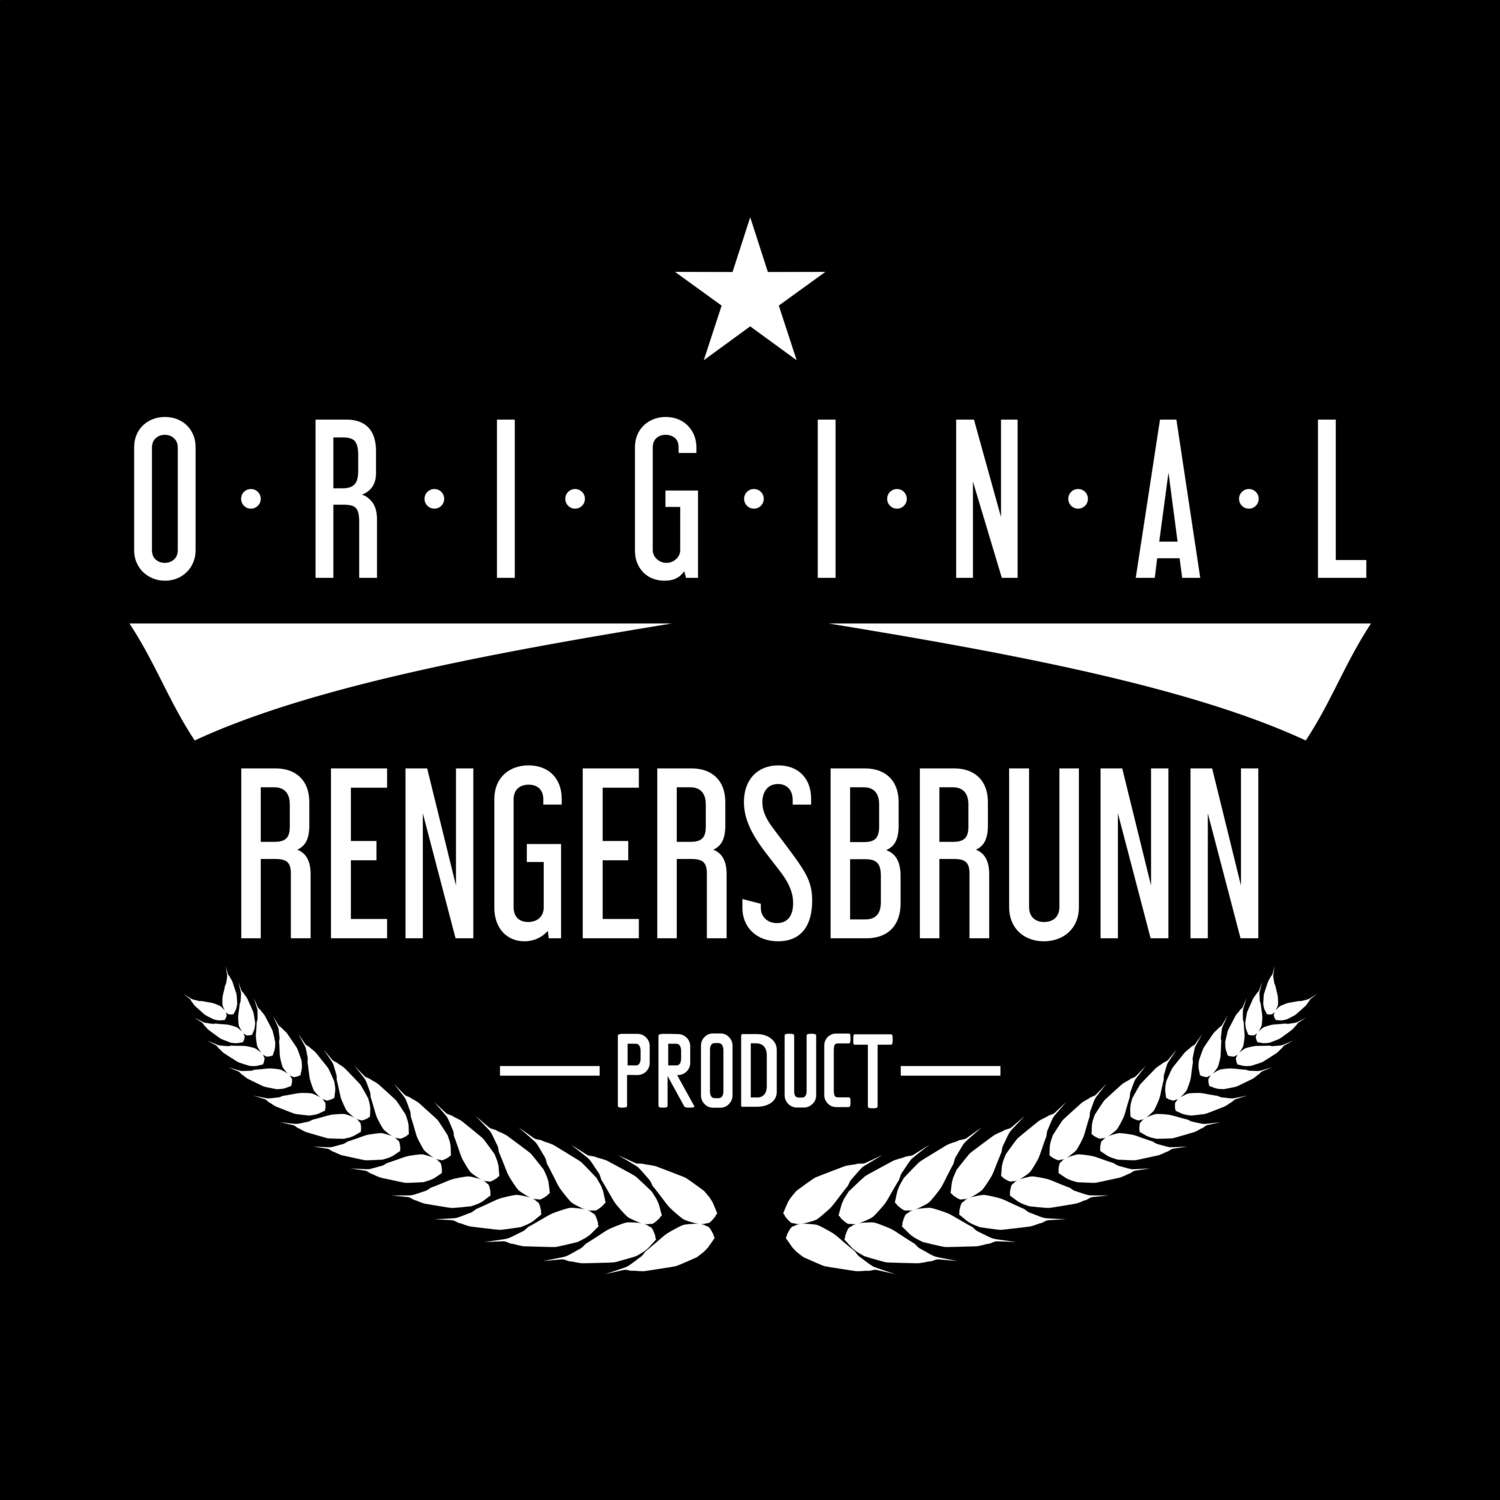 Rengersbrunn T-Shirt »Original Product«